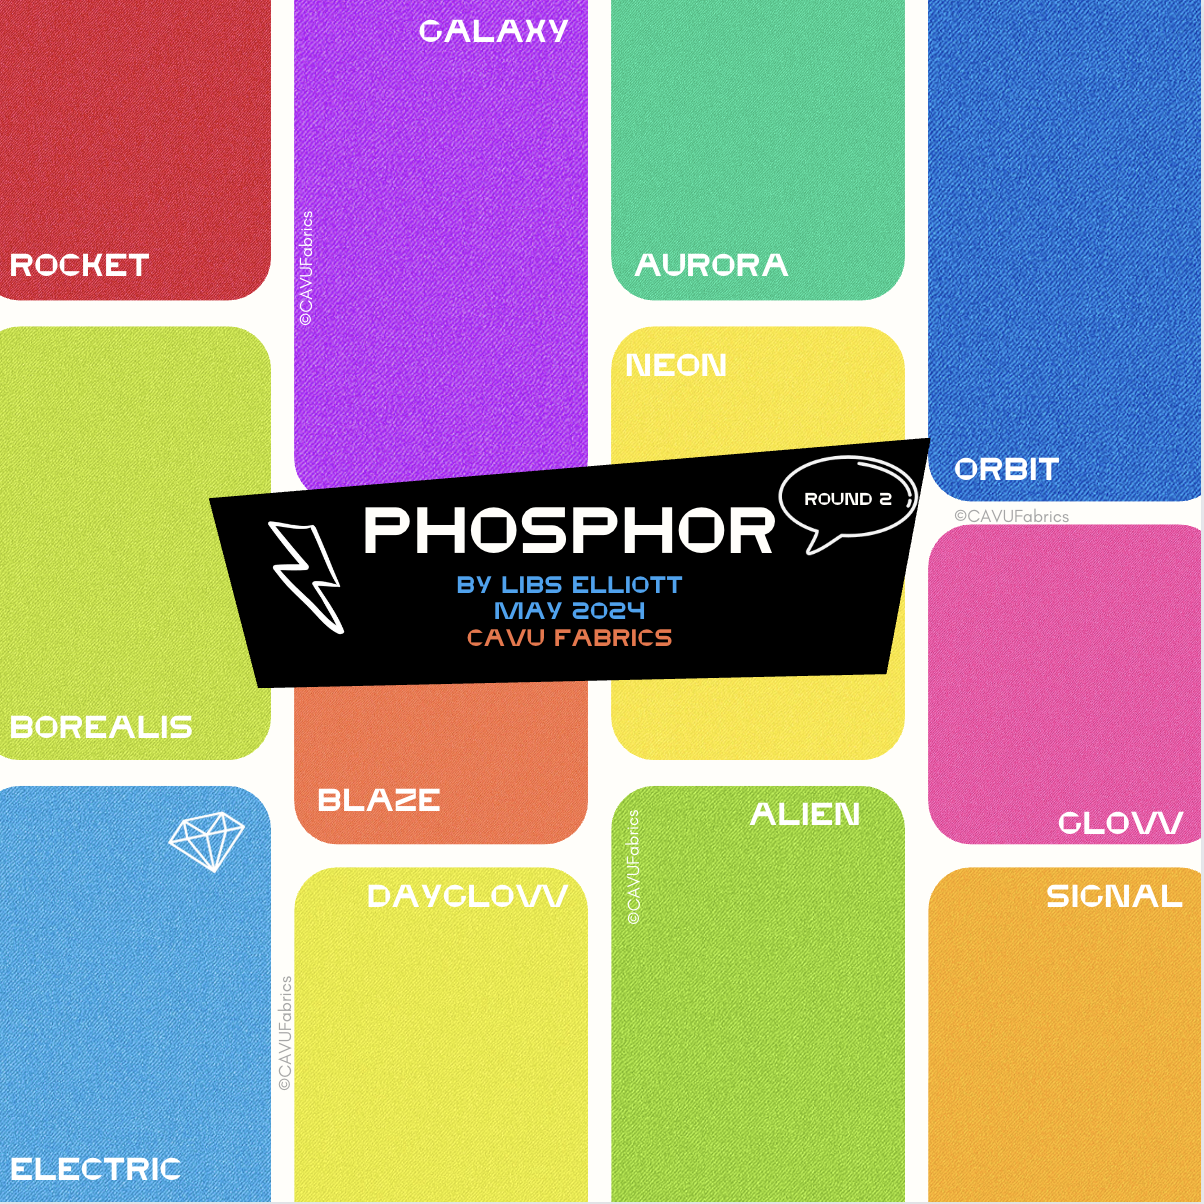 Signal - Phosphor by Libs Elliott